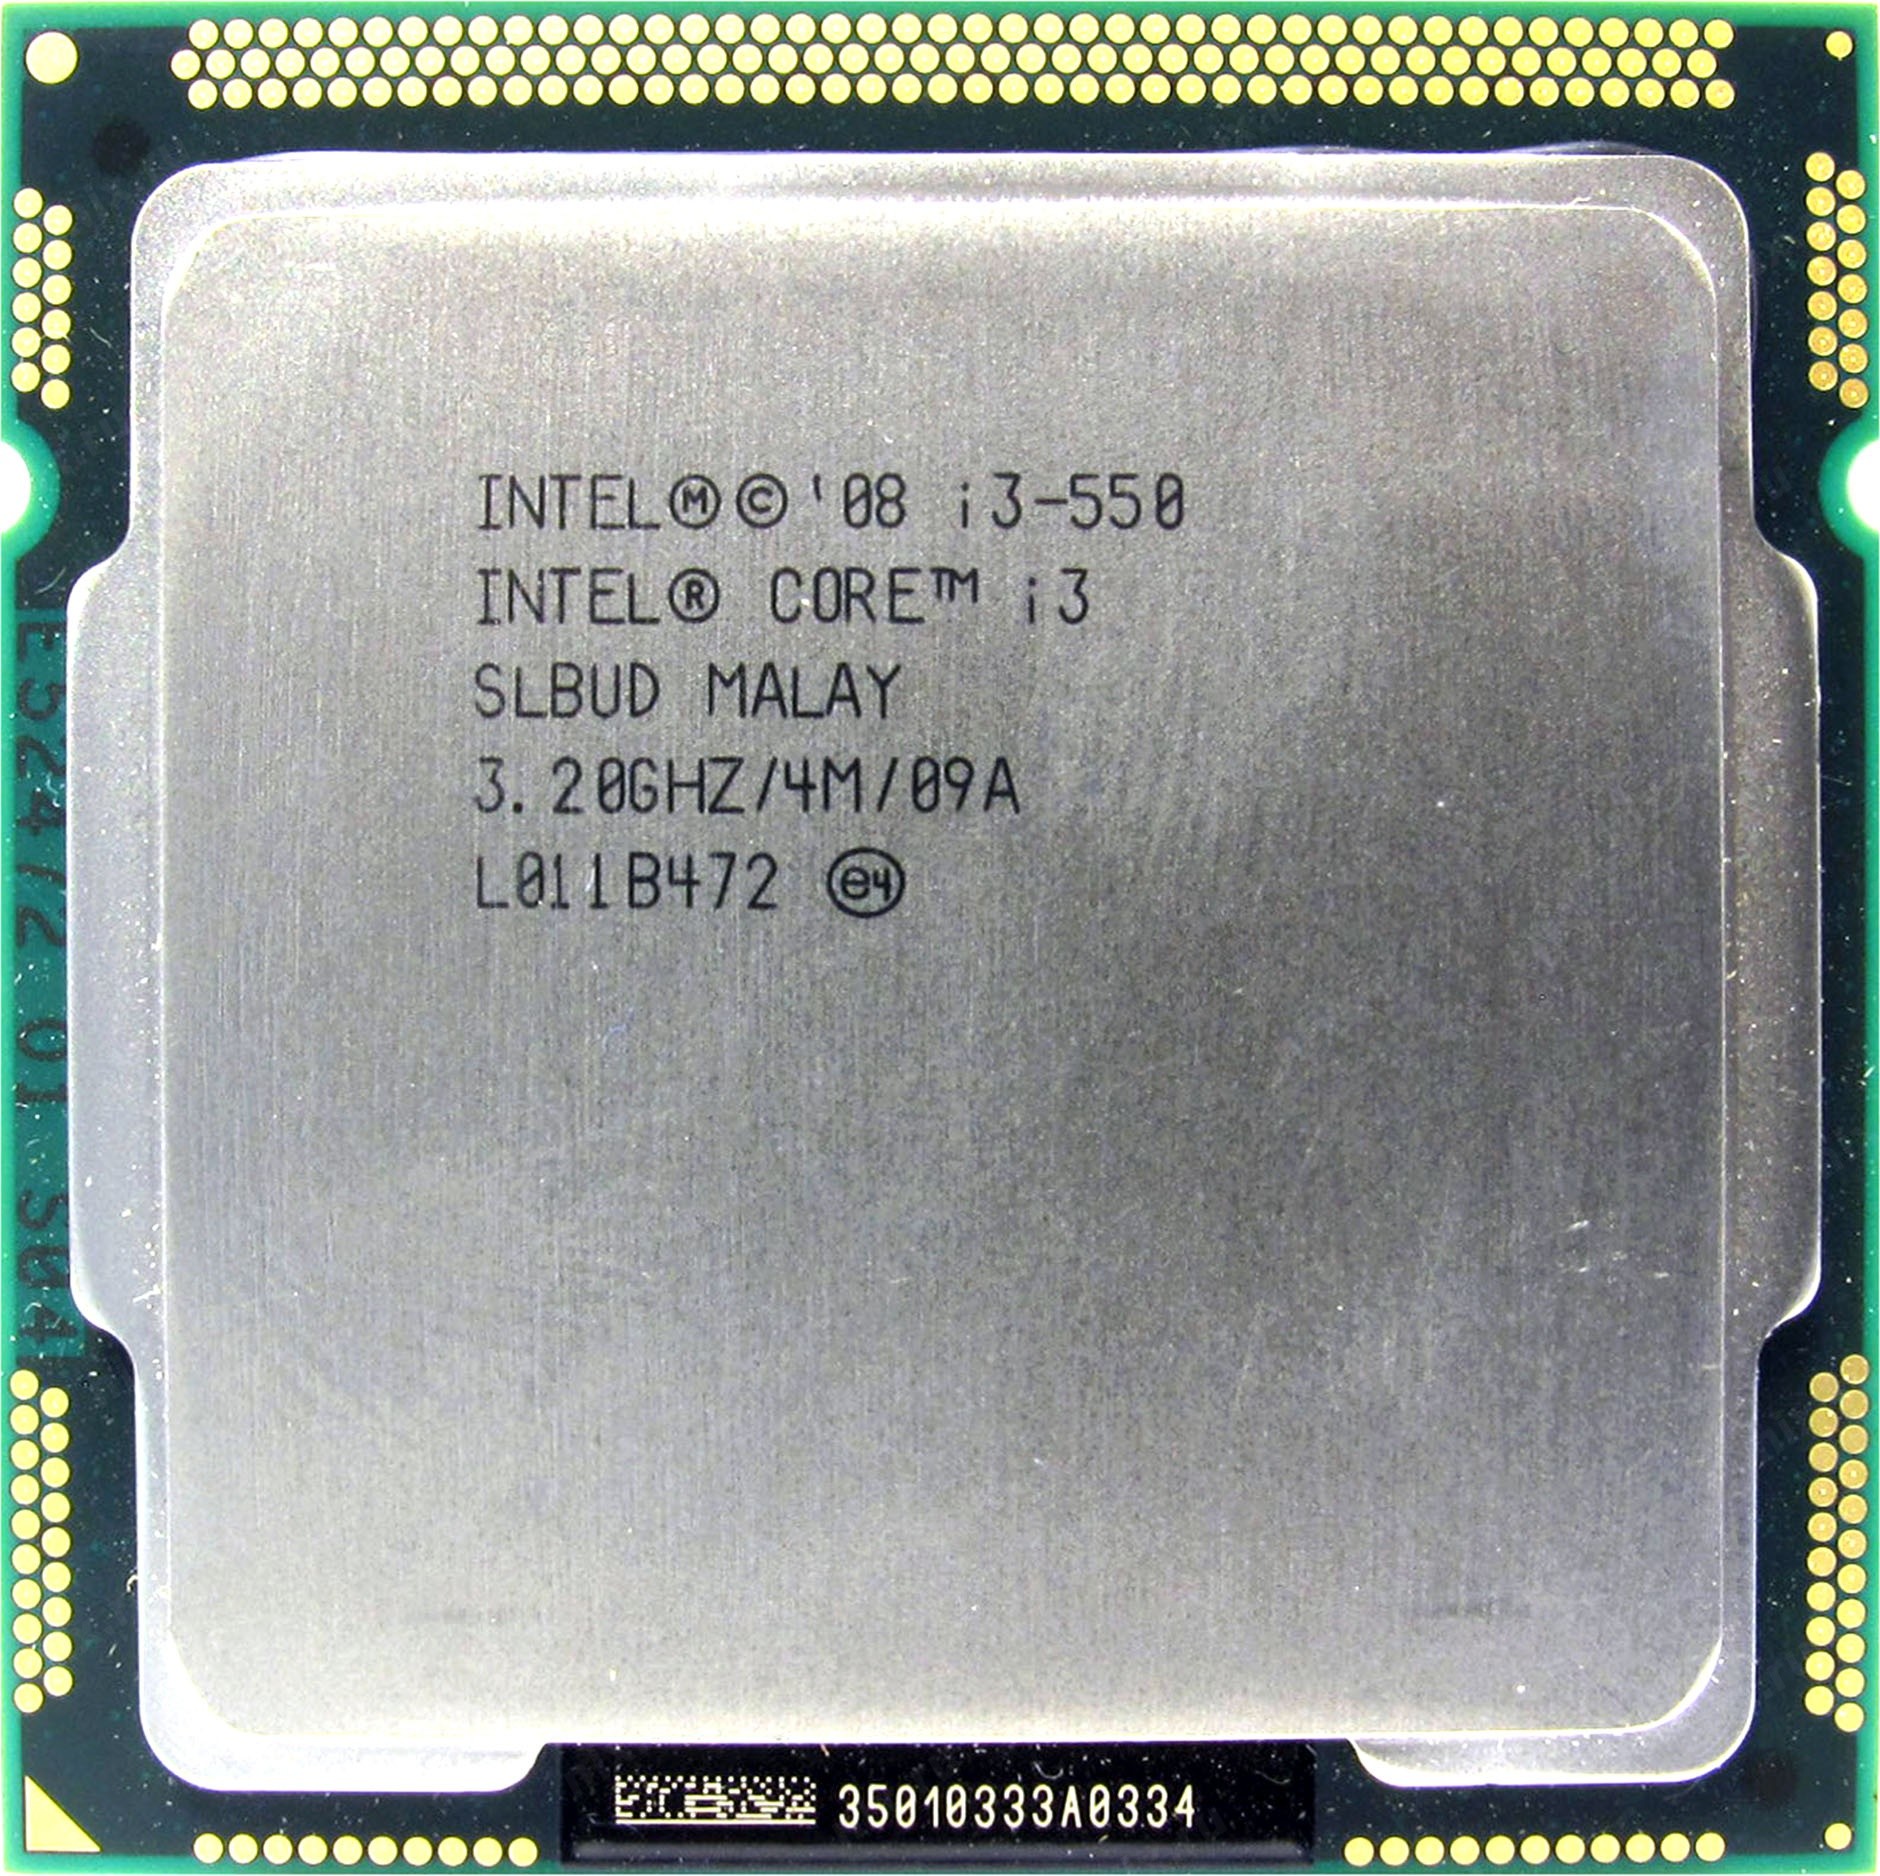 Интел core i3. Intel Core i3. Intel Core 3. Процессор Интел кор i3 сокет. Intel Core i3 550.